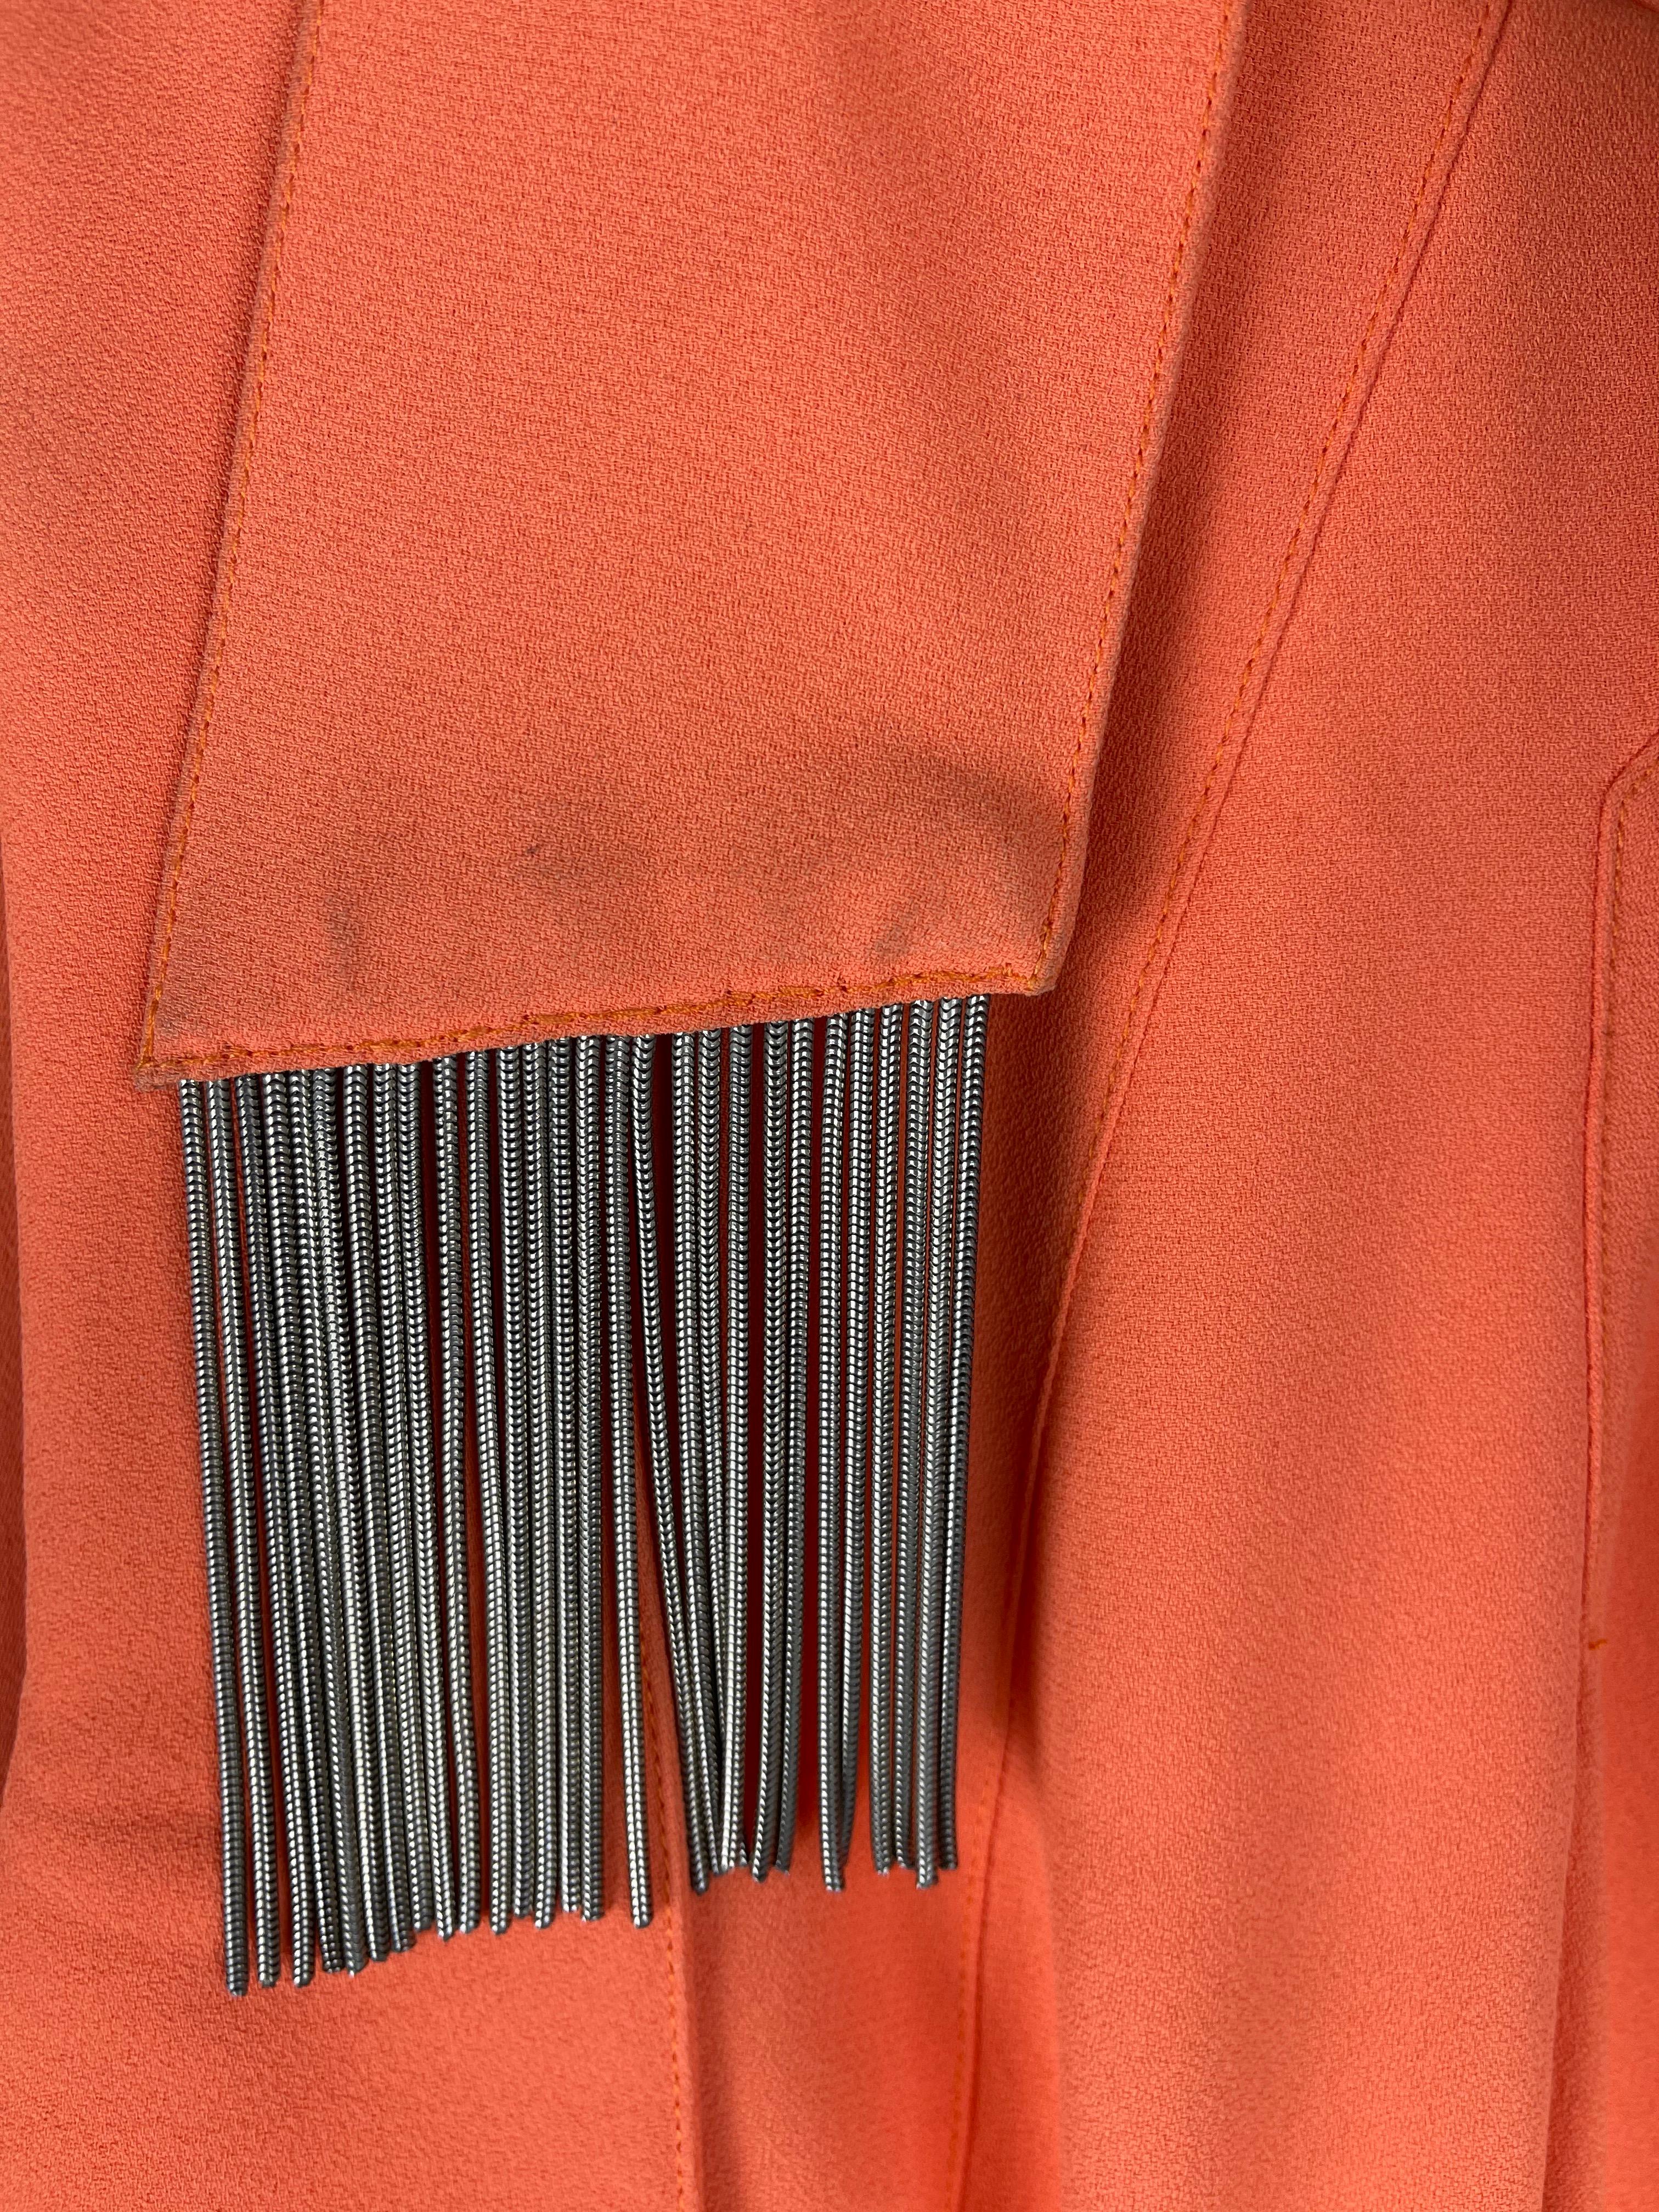 Thierry Mugler Orange Dress Metallic Fringes Large 3